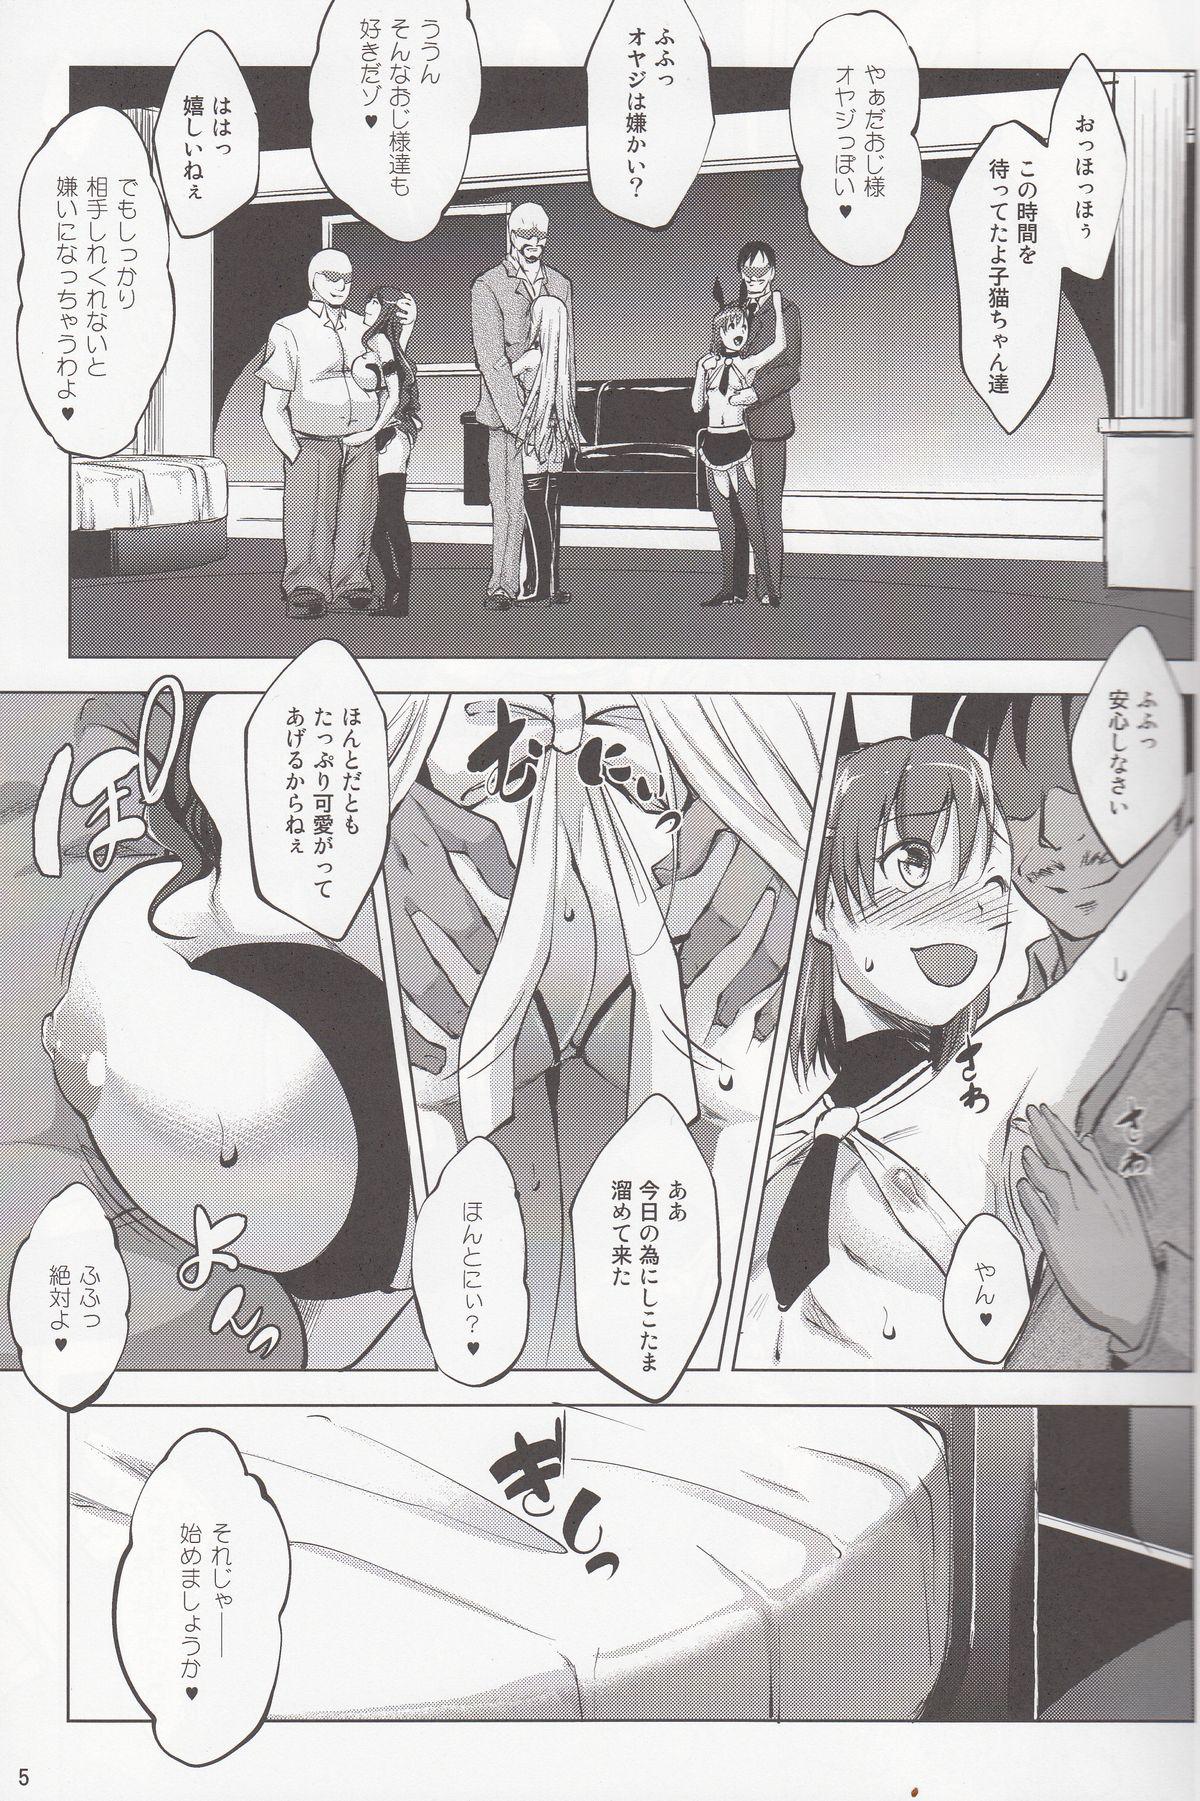 Ball Busting Toaru Himitsu no Chounouryokusha S - Toaru kagaku no railgun Toaru majutsu no index Hot Sluts - Page 4